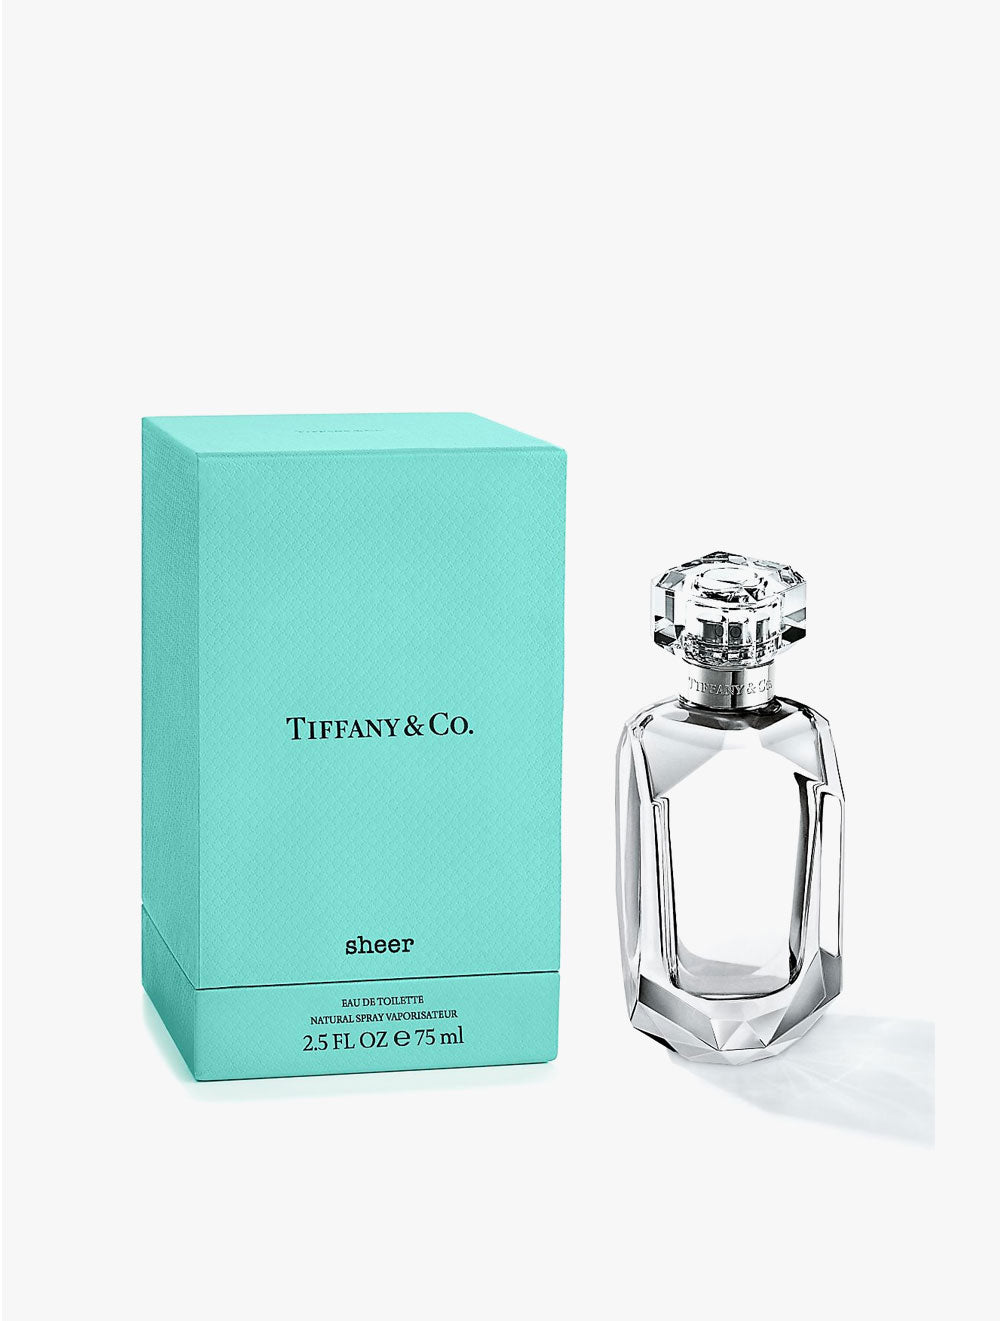 TIFFANY & CO. Eau De Parfum